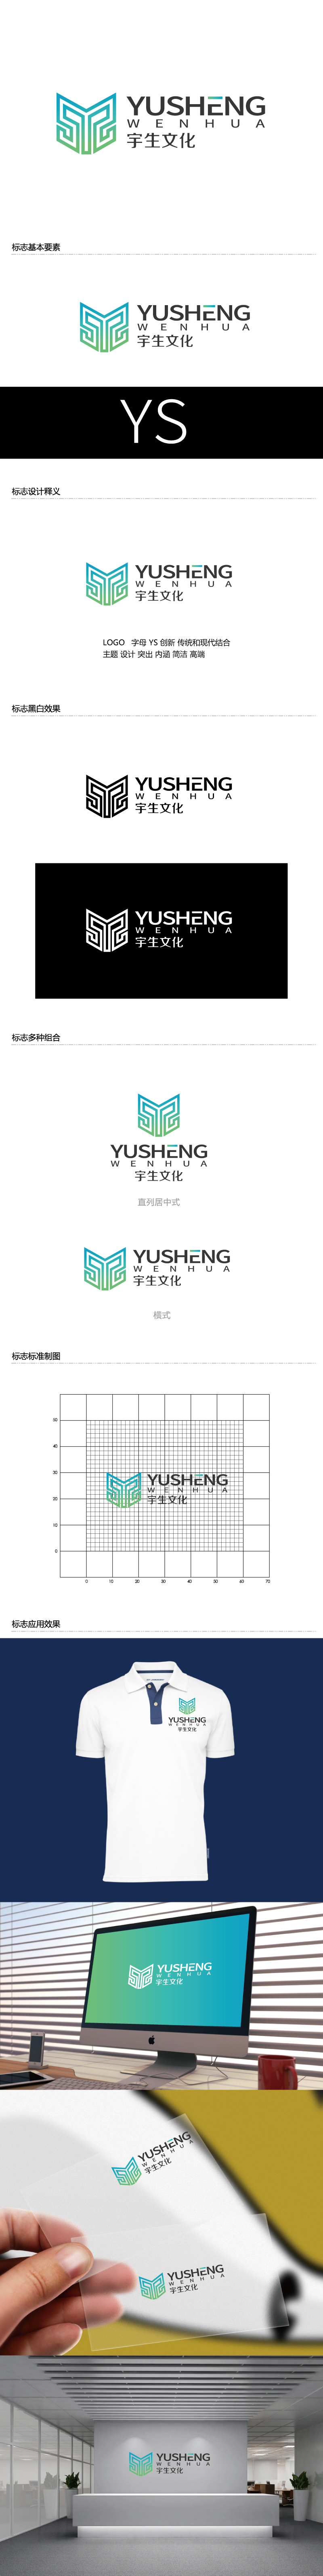 张俊的山东宇生文化股份有限公司logo设计